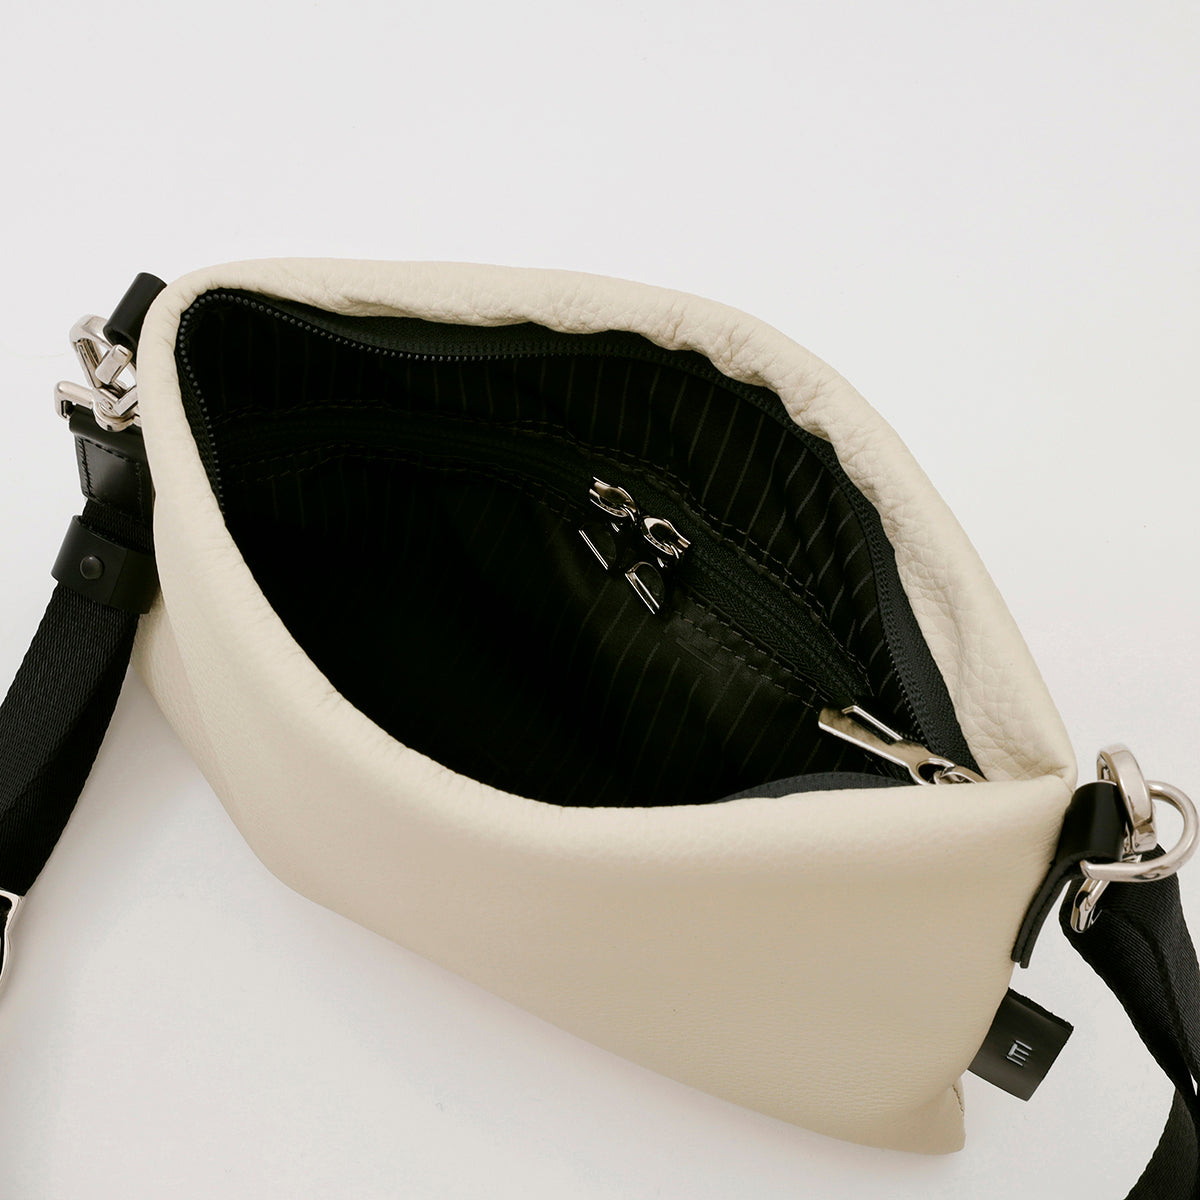 ITTI (イッチ) | MARY SACOCHE - S / DIPLO SKY(マリーサコッシュ/ディプロスカイ)レザー 本革 ショルダー バッグ ポーチ メンズ レディース ブランド かばん 鞄 カバン 旅行 ブラック 黒